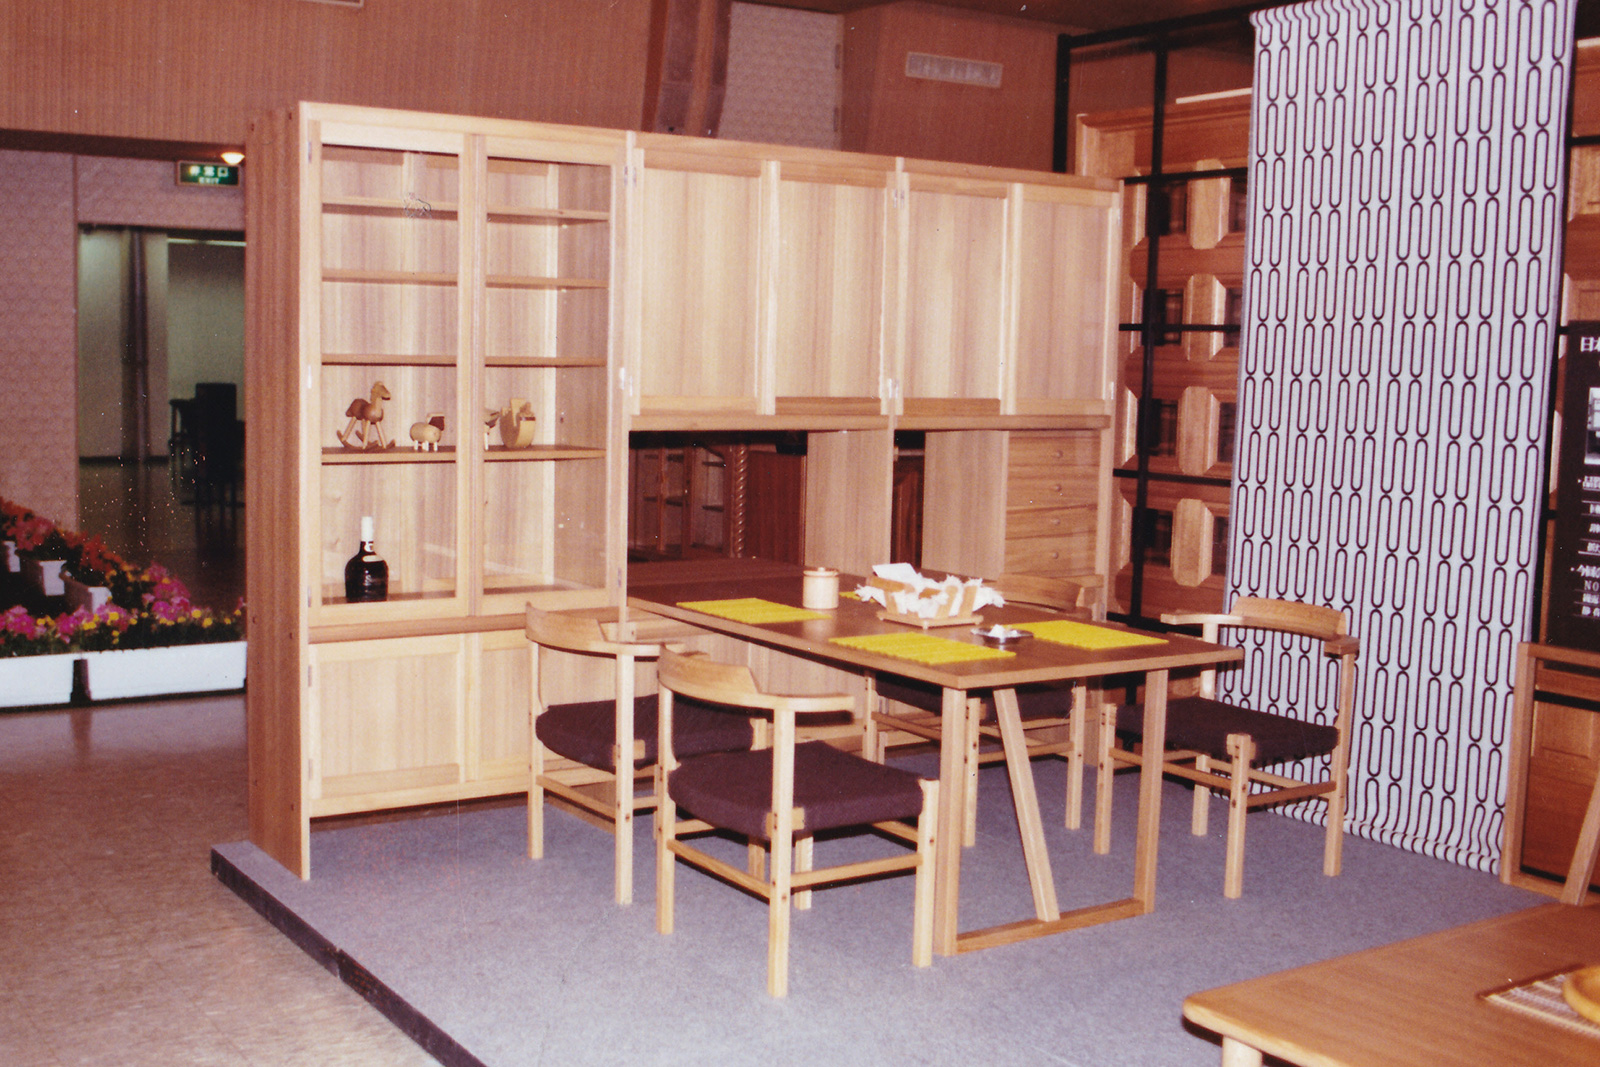 1978年(昭和 53年)旭川家具木工祭出品作品「間仕切り棚とダイニングセット」(仮展示)。